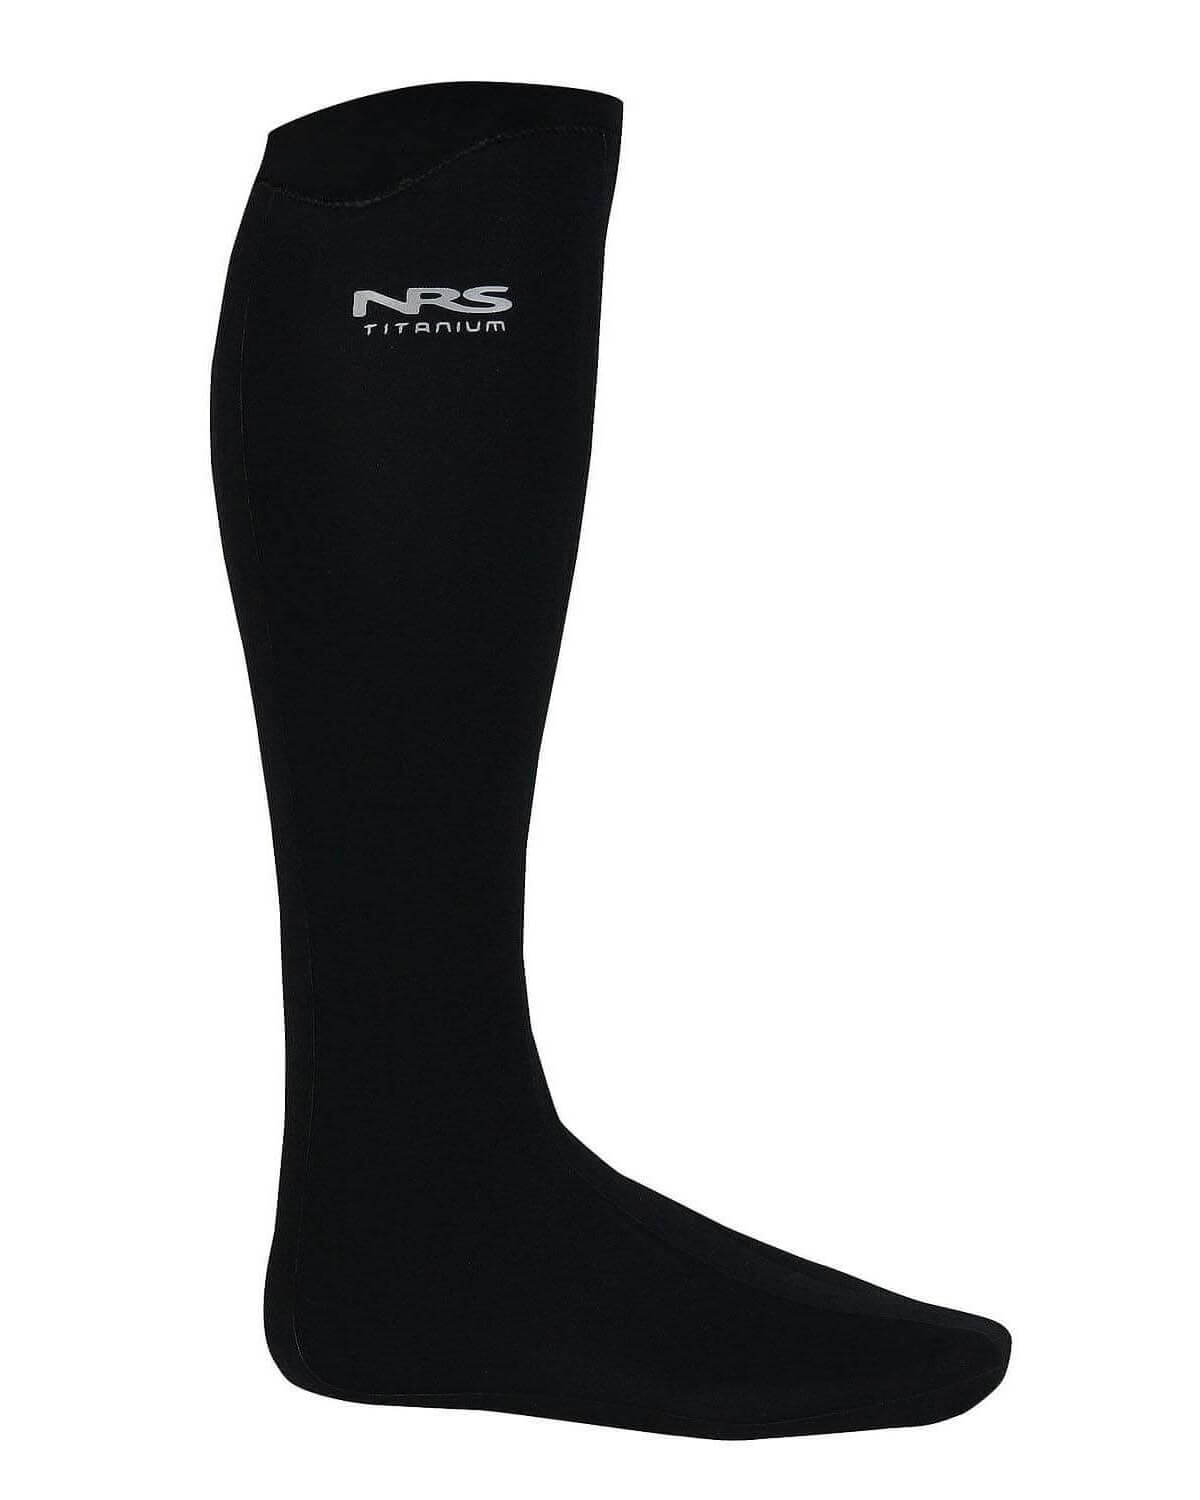 3mm NRS Boundary Sock